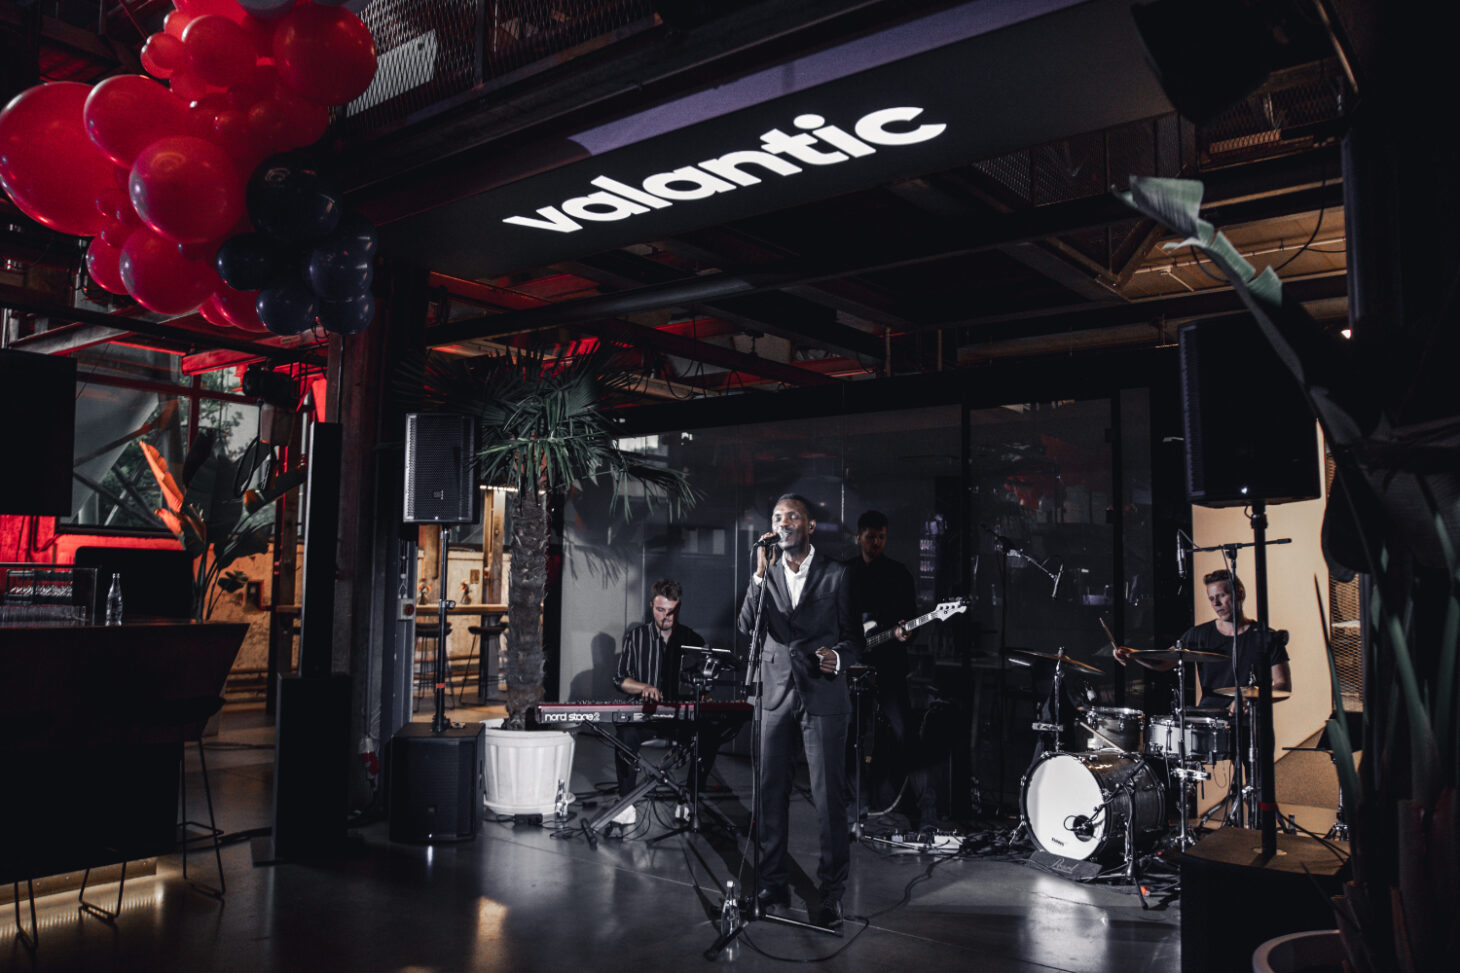 Eine Blues-Rockband spielt auf einer Partylocation im Industrial Style - über ihnen leuchtet das valantic-Logo